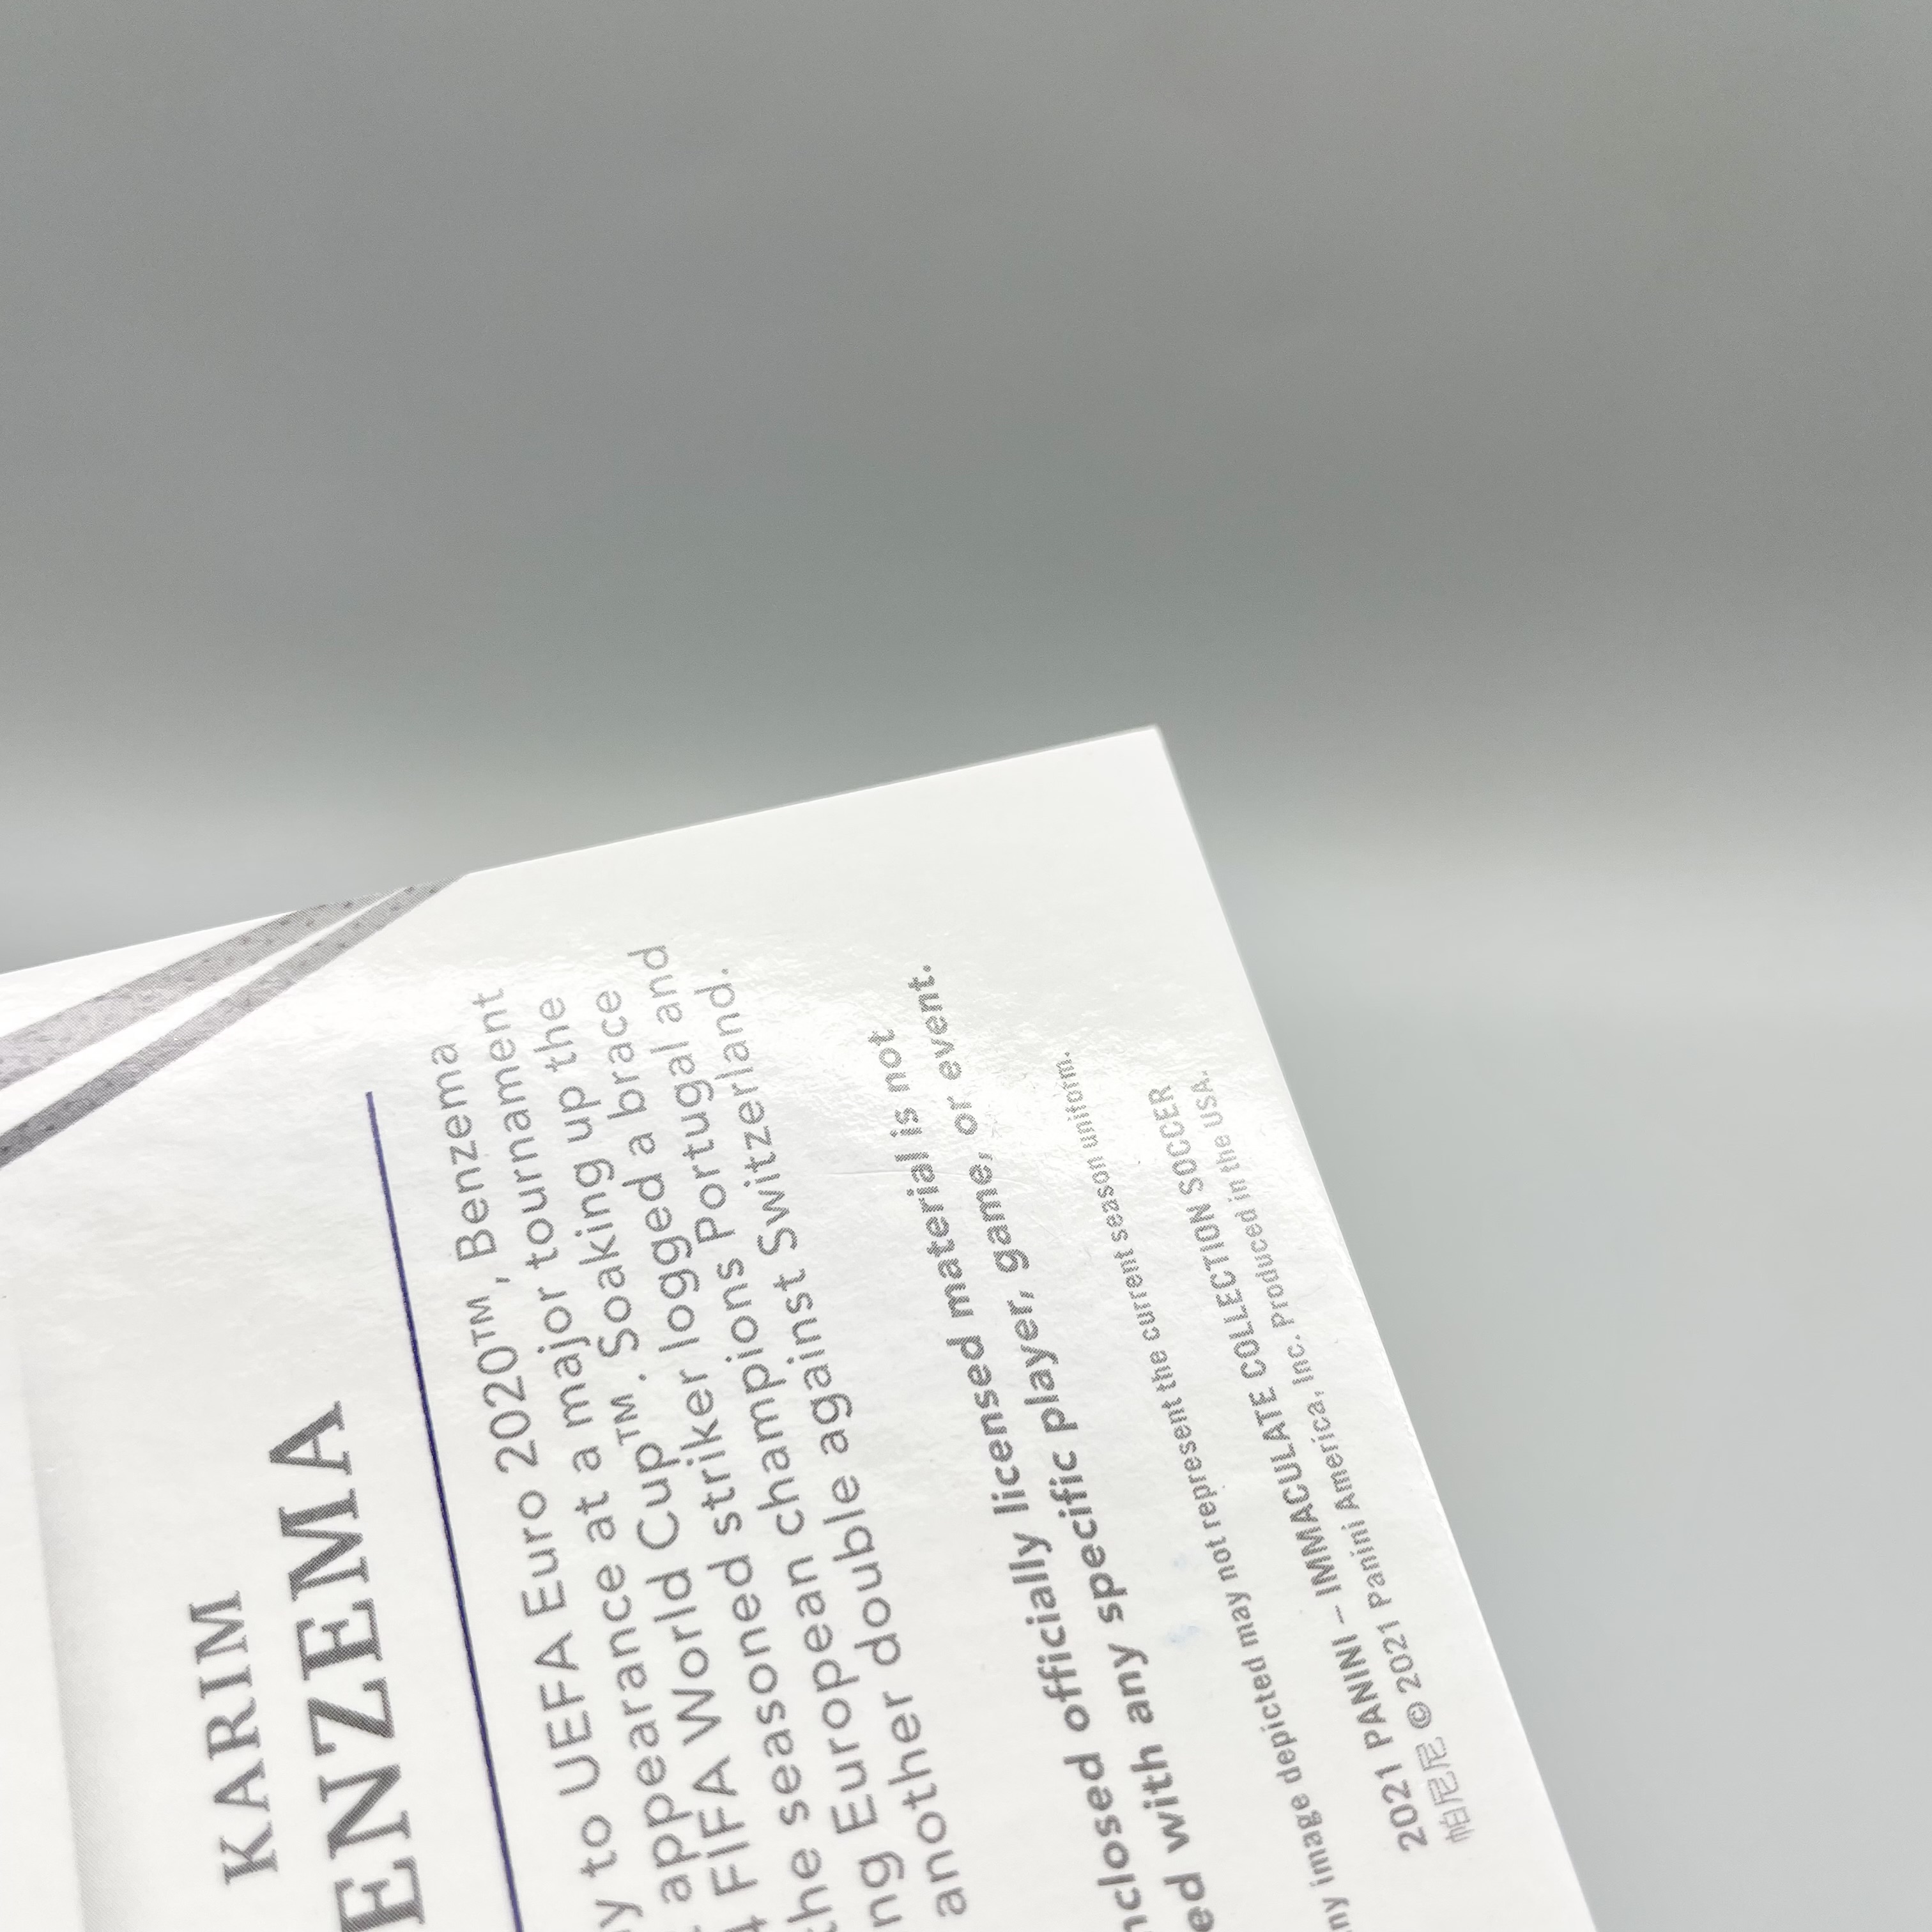 【越秀山拍卖行】2021 Panini Immaculate Karim Benzema 法国 本泽马 04/10编 金折 Patch切割 Standard标准 大窗球衣卡 卡品如图 吉达联合 皇马 里昂 YXS2386015